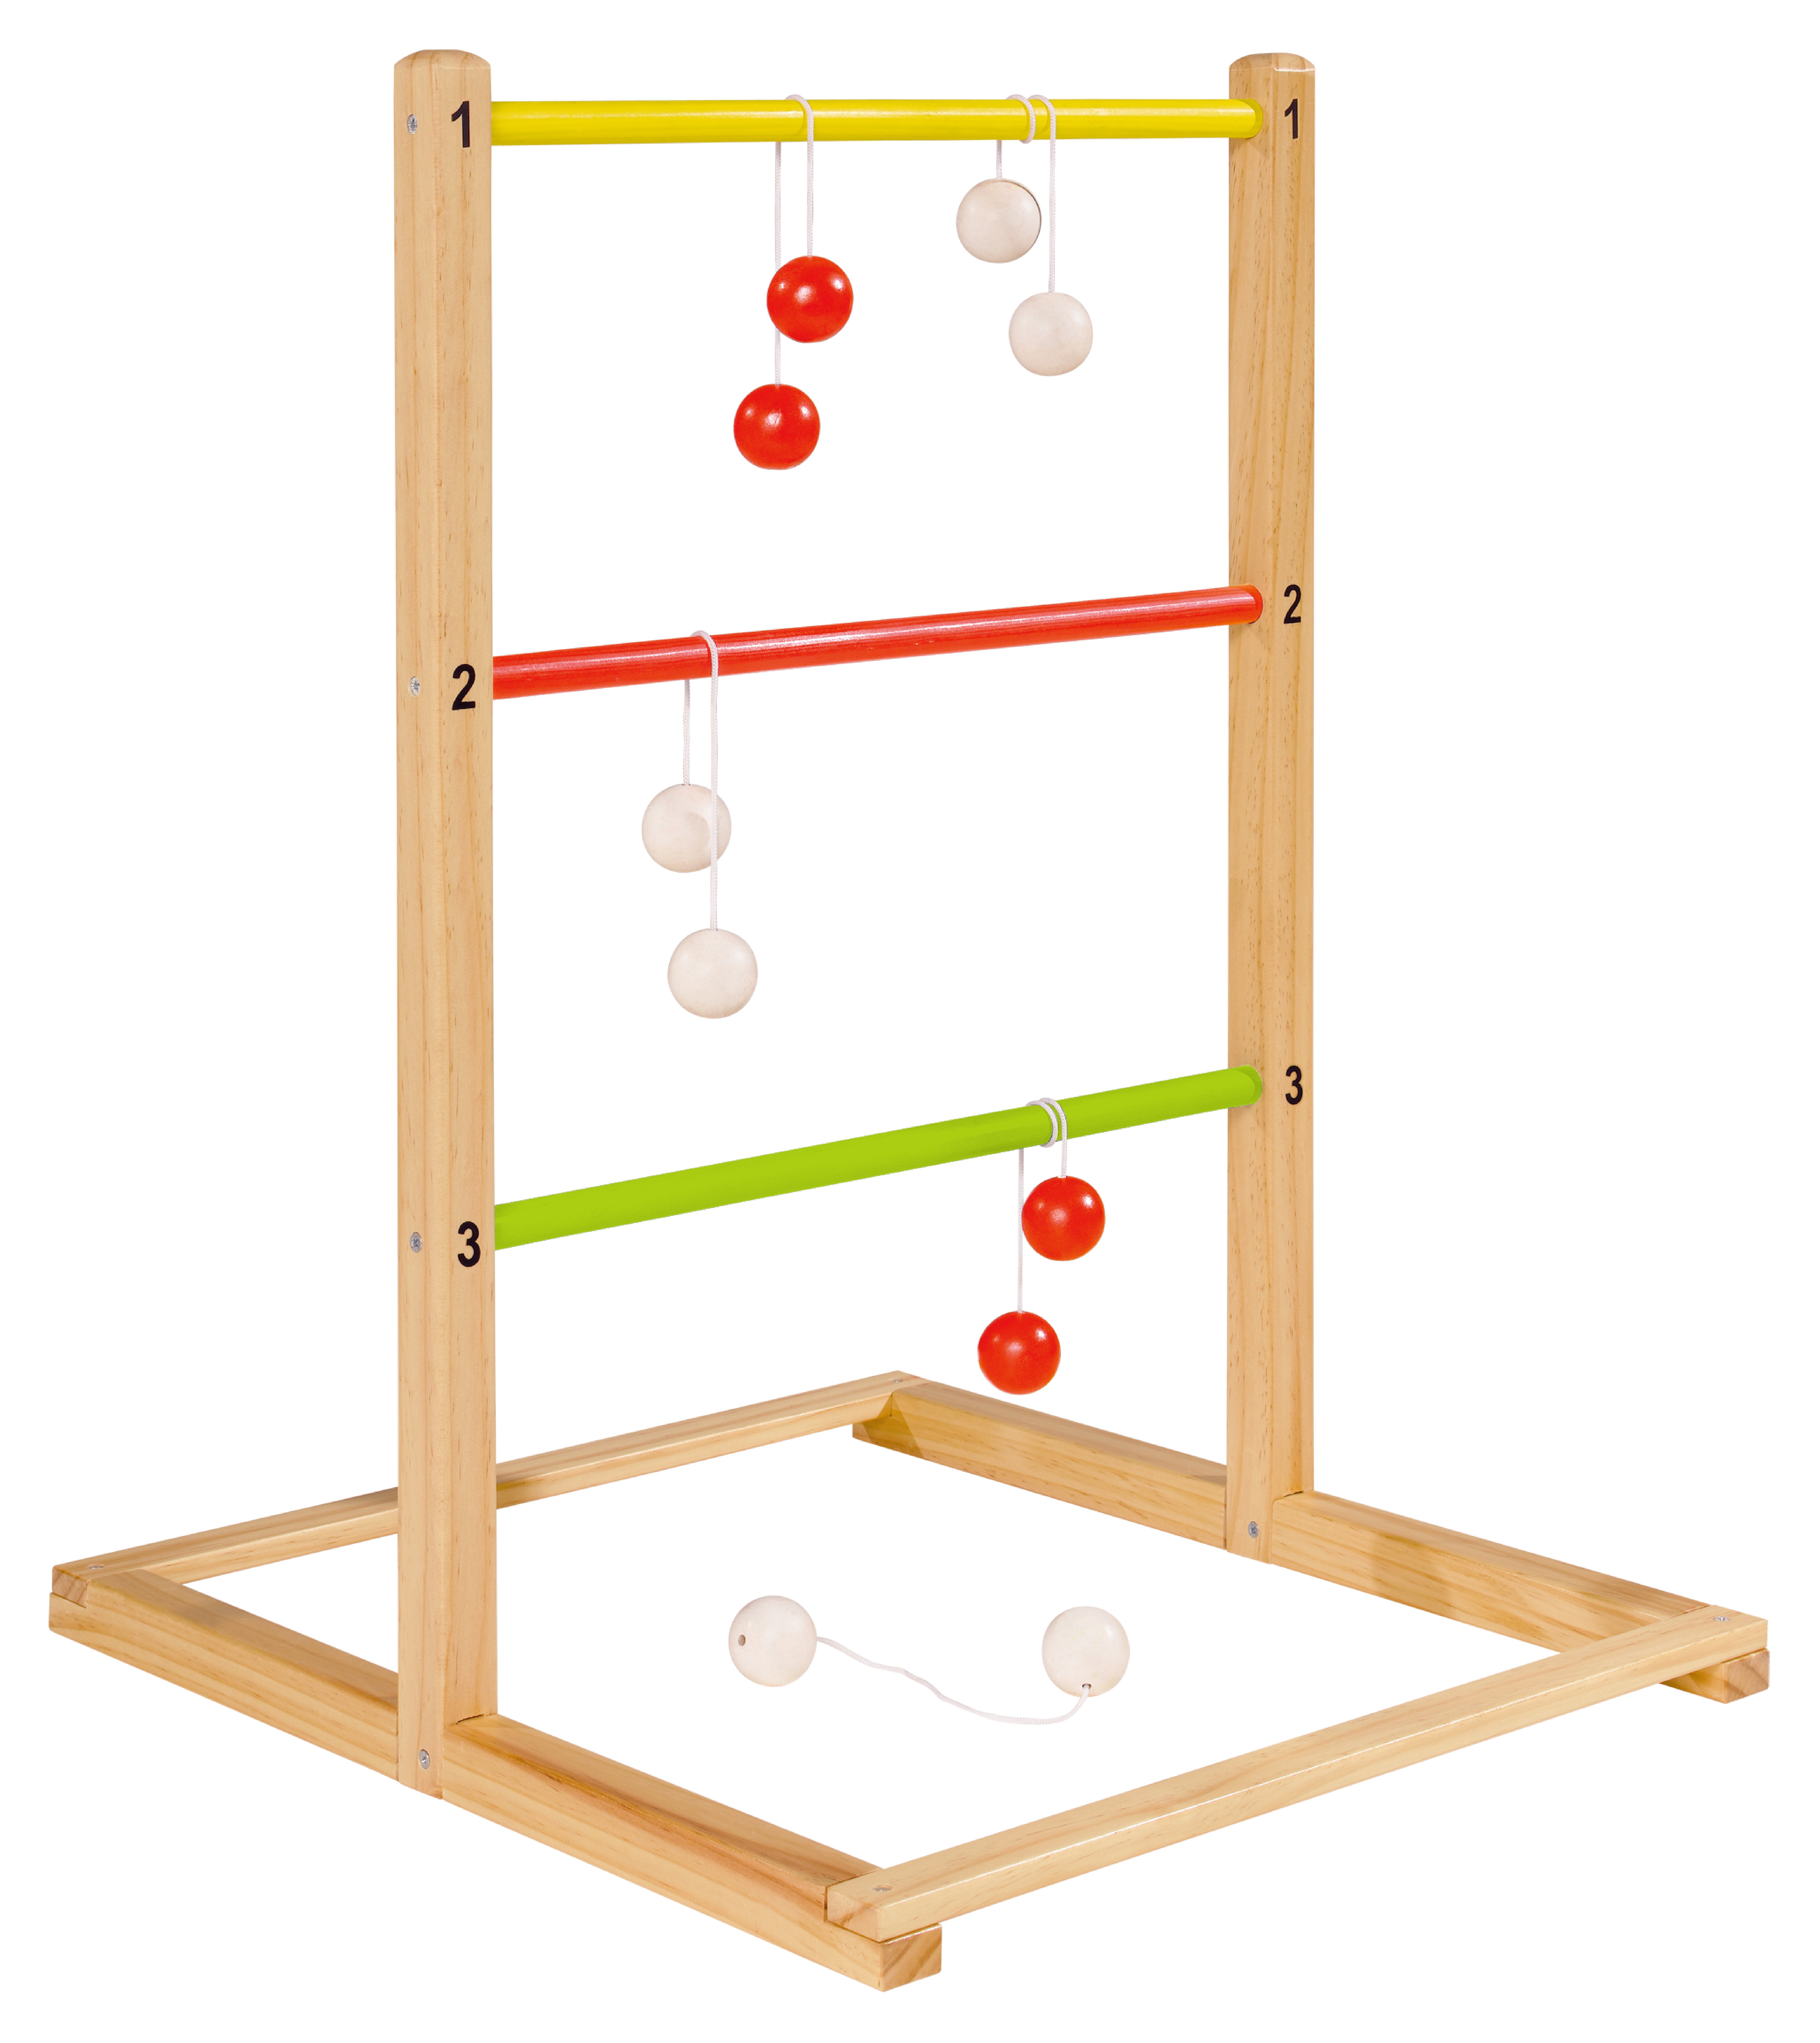 Playfun - Ladder Golf (8519)